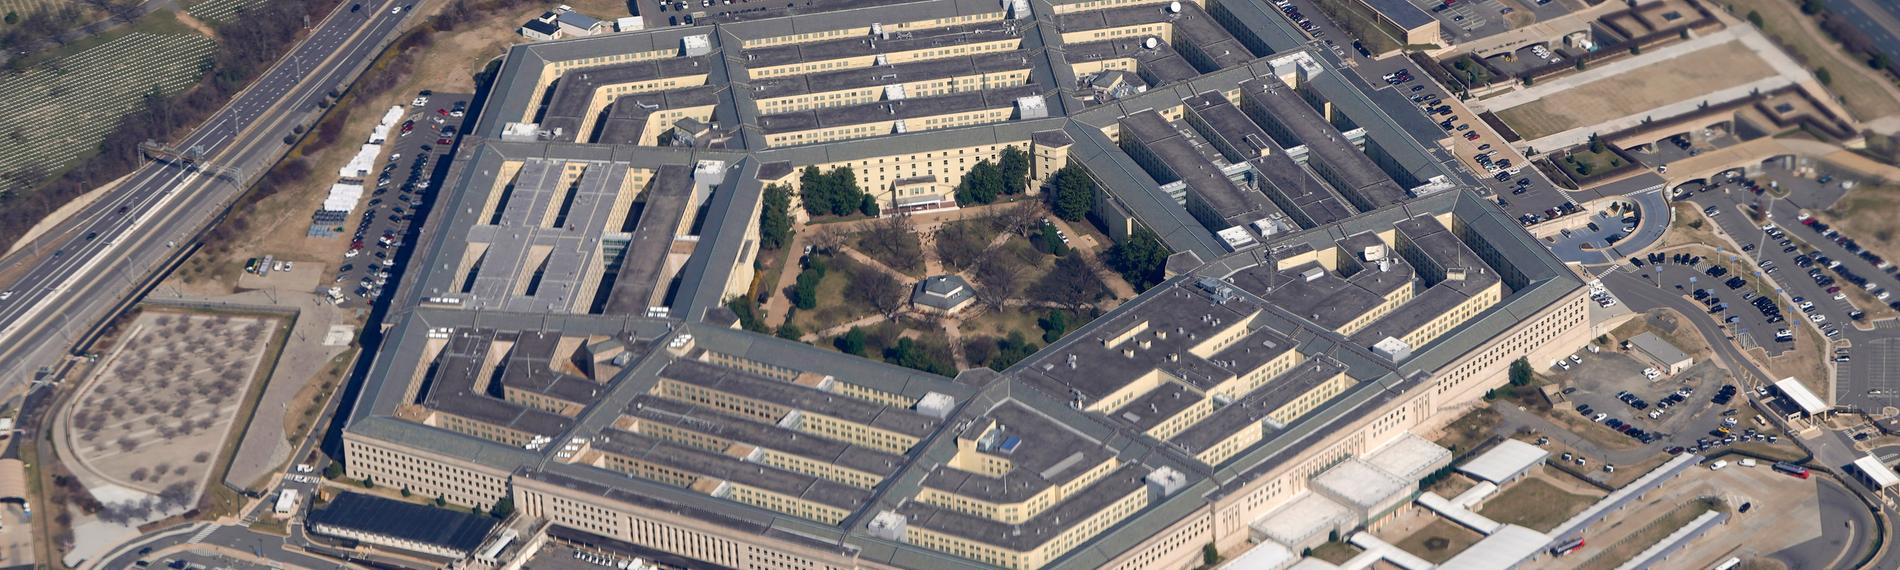 Das Pentagon, Sitz des US-Verteidigungsministeriums, aufgenommen am 15.06.2005